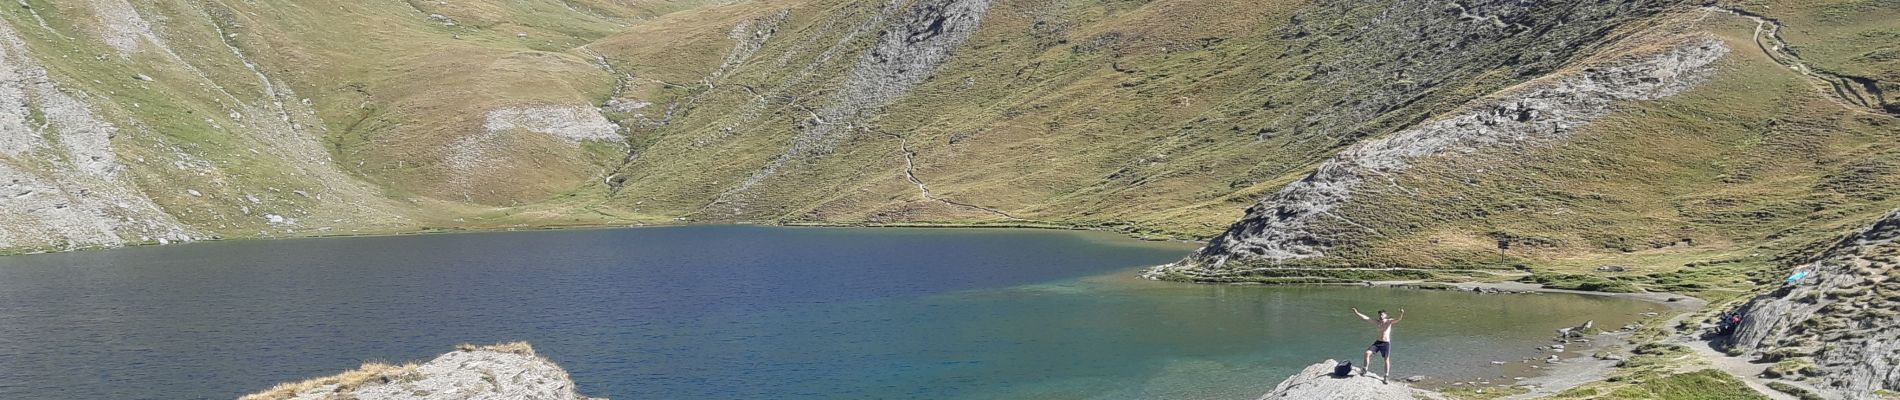 Randonnée Marche Aiguilles - lacs malrif à partir du lombard - Photo